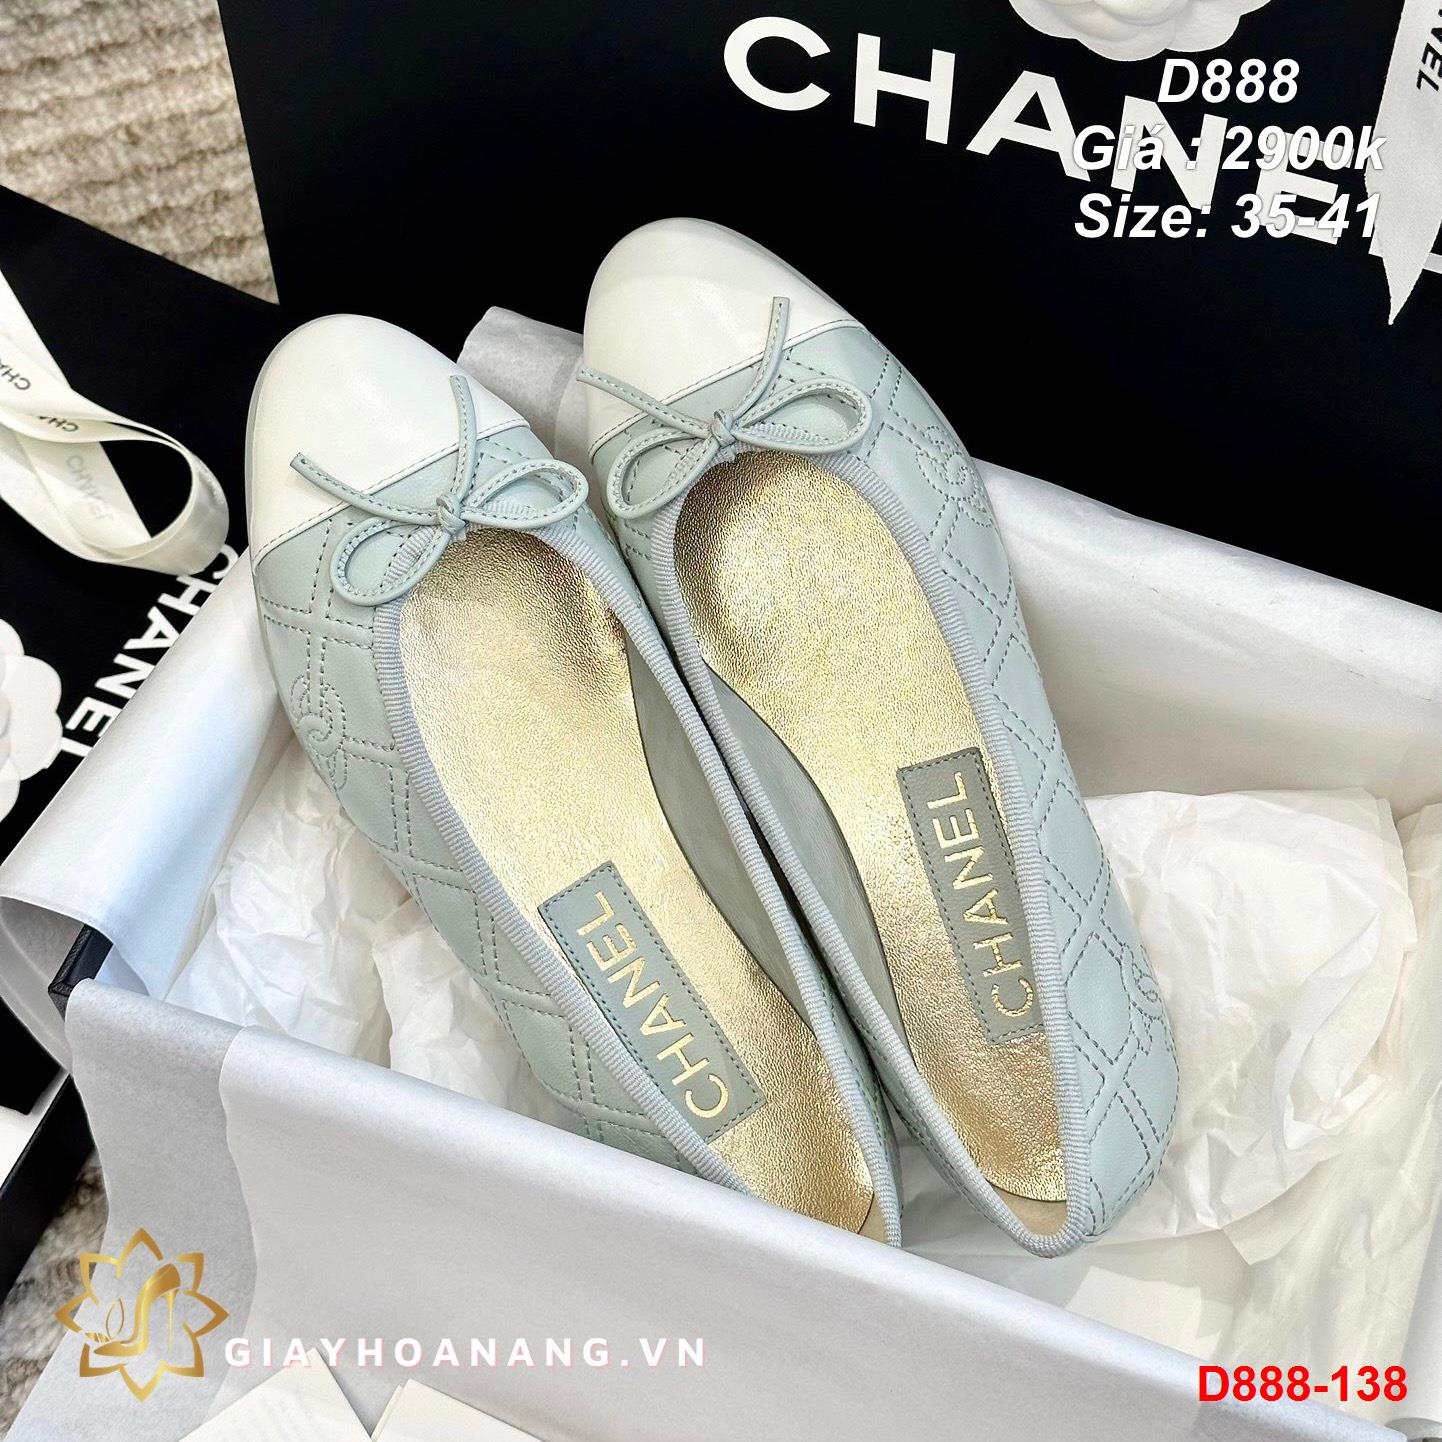 D888-138 Chanel giày bệt siêu cấp